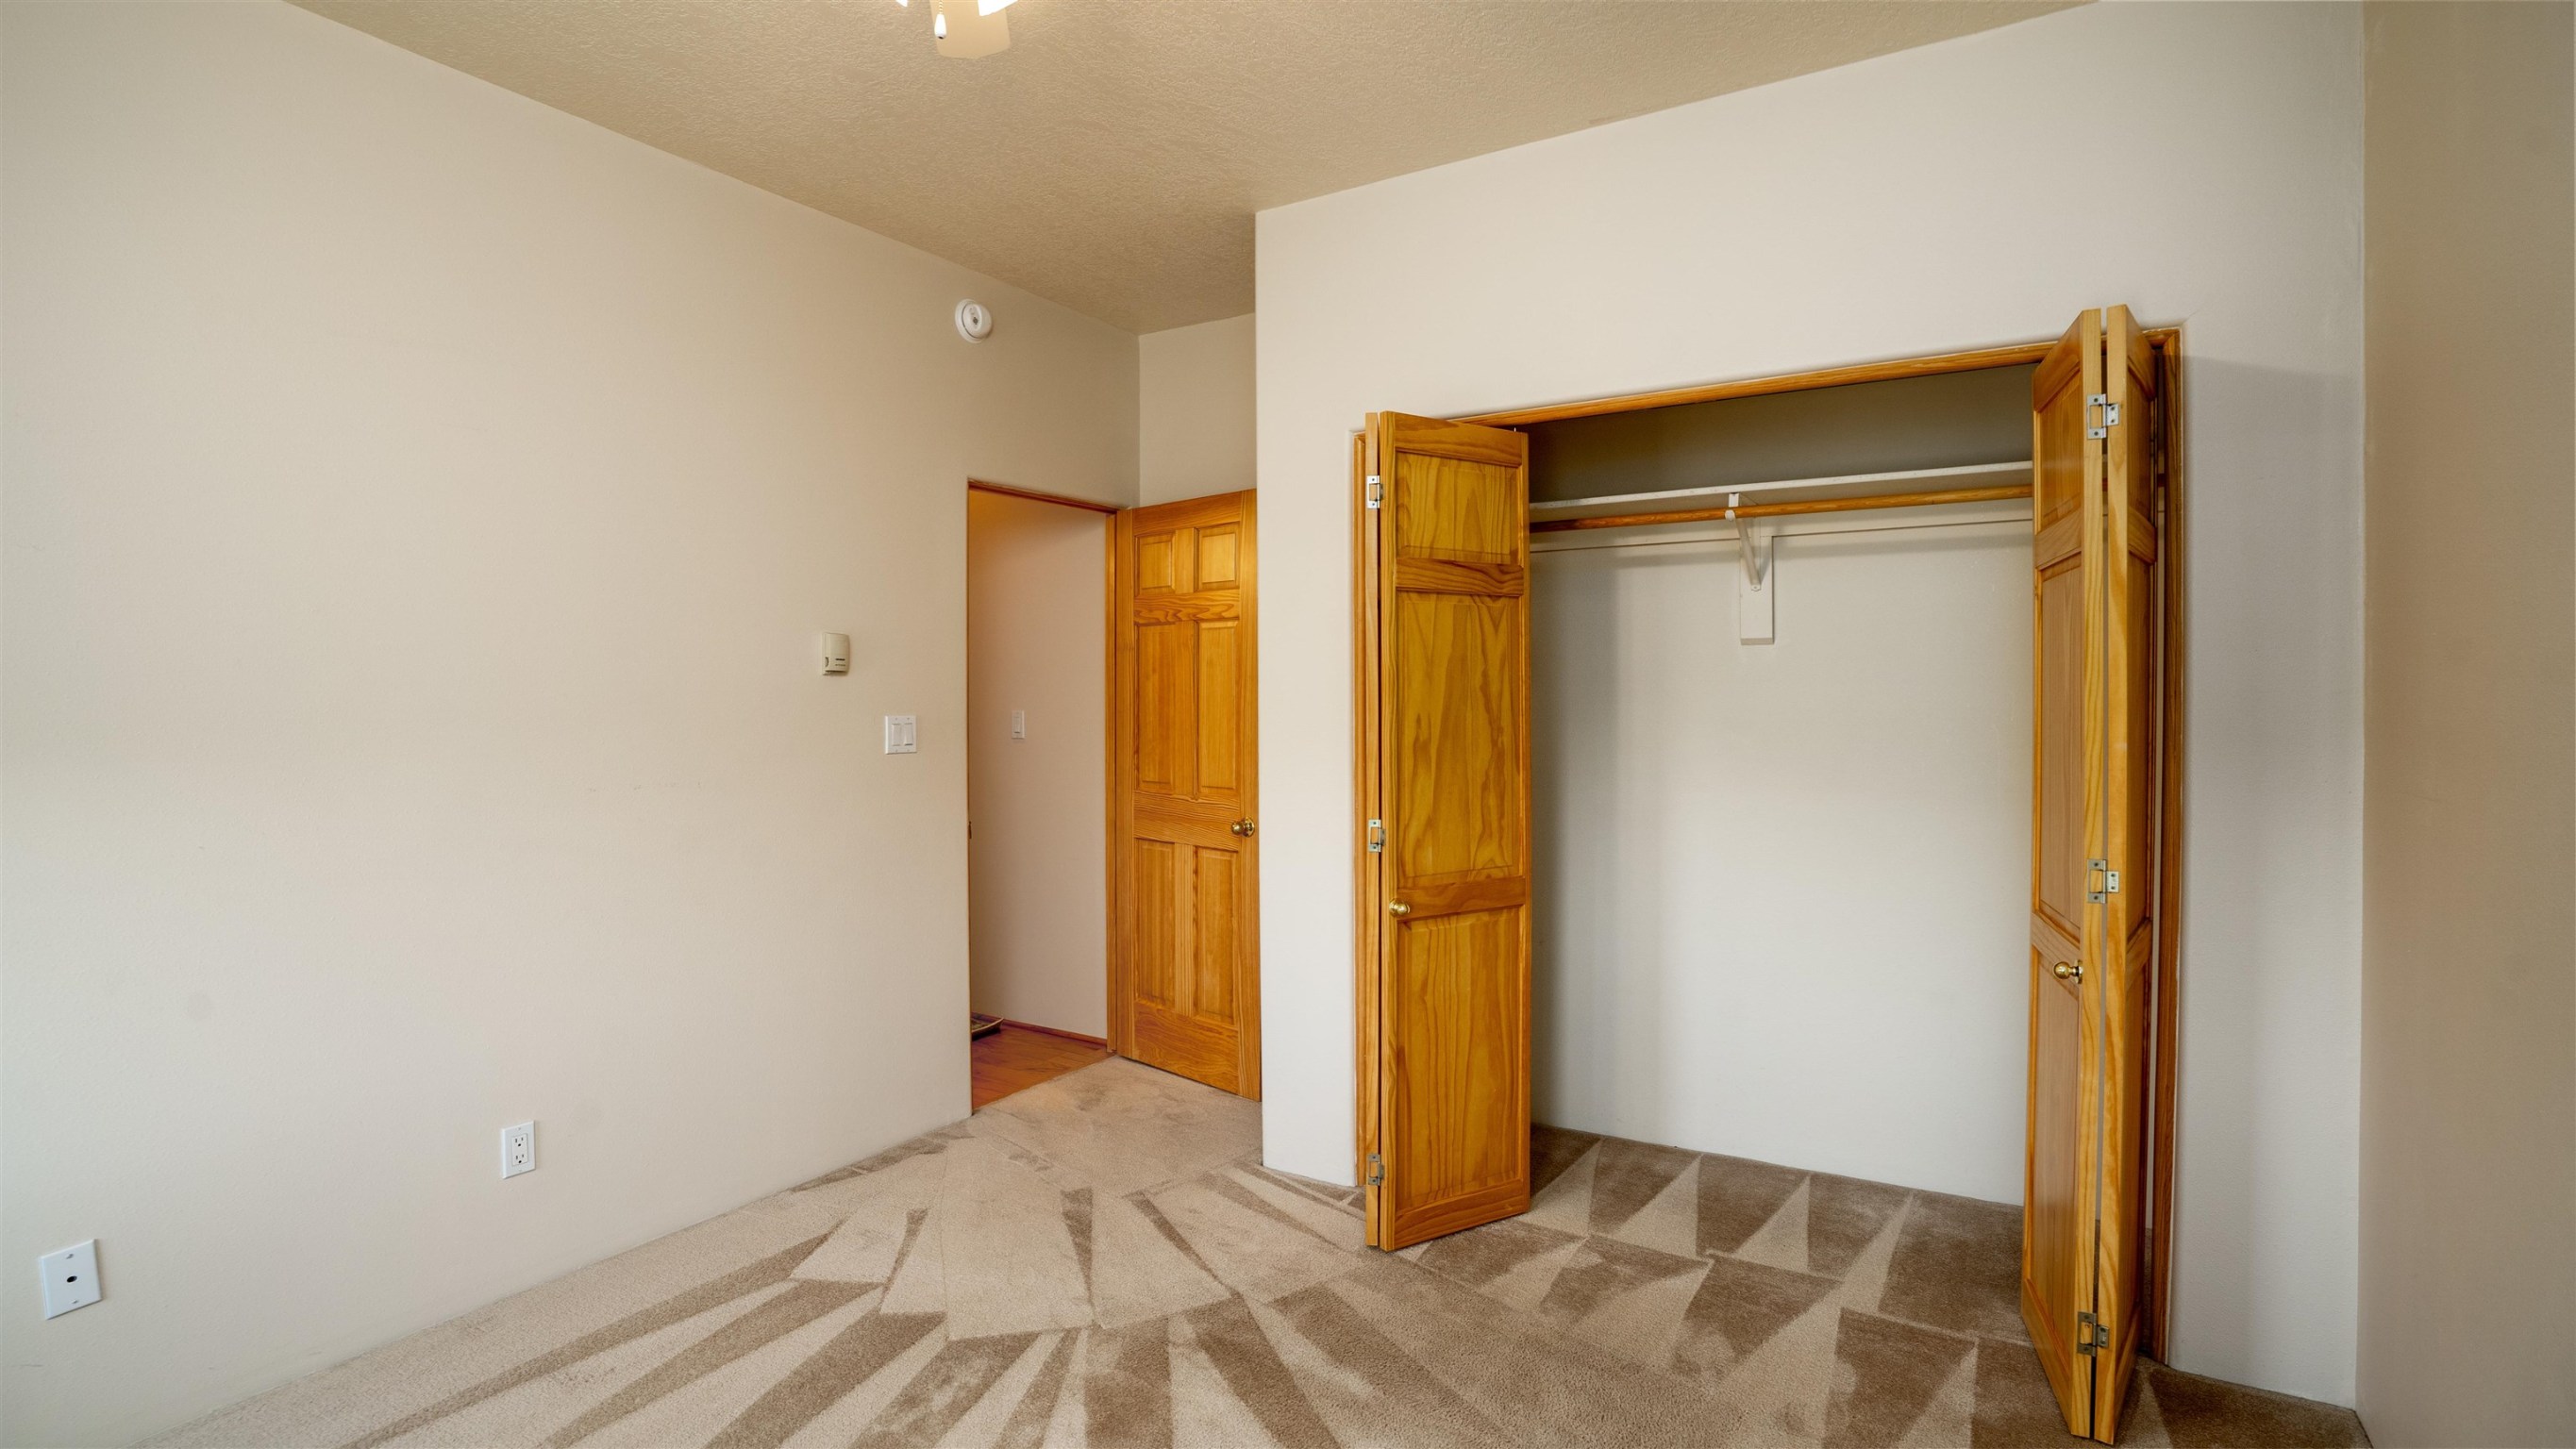 3044 PUEBLO GRANDE, Santa Fe, New Mexico 87507, 3 Bedrooms Bedrooms, ,2 BathroomsBathrooms,Residential,For Sale,3044 PUEBLO GRANDE,202201387